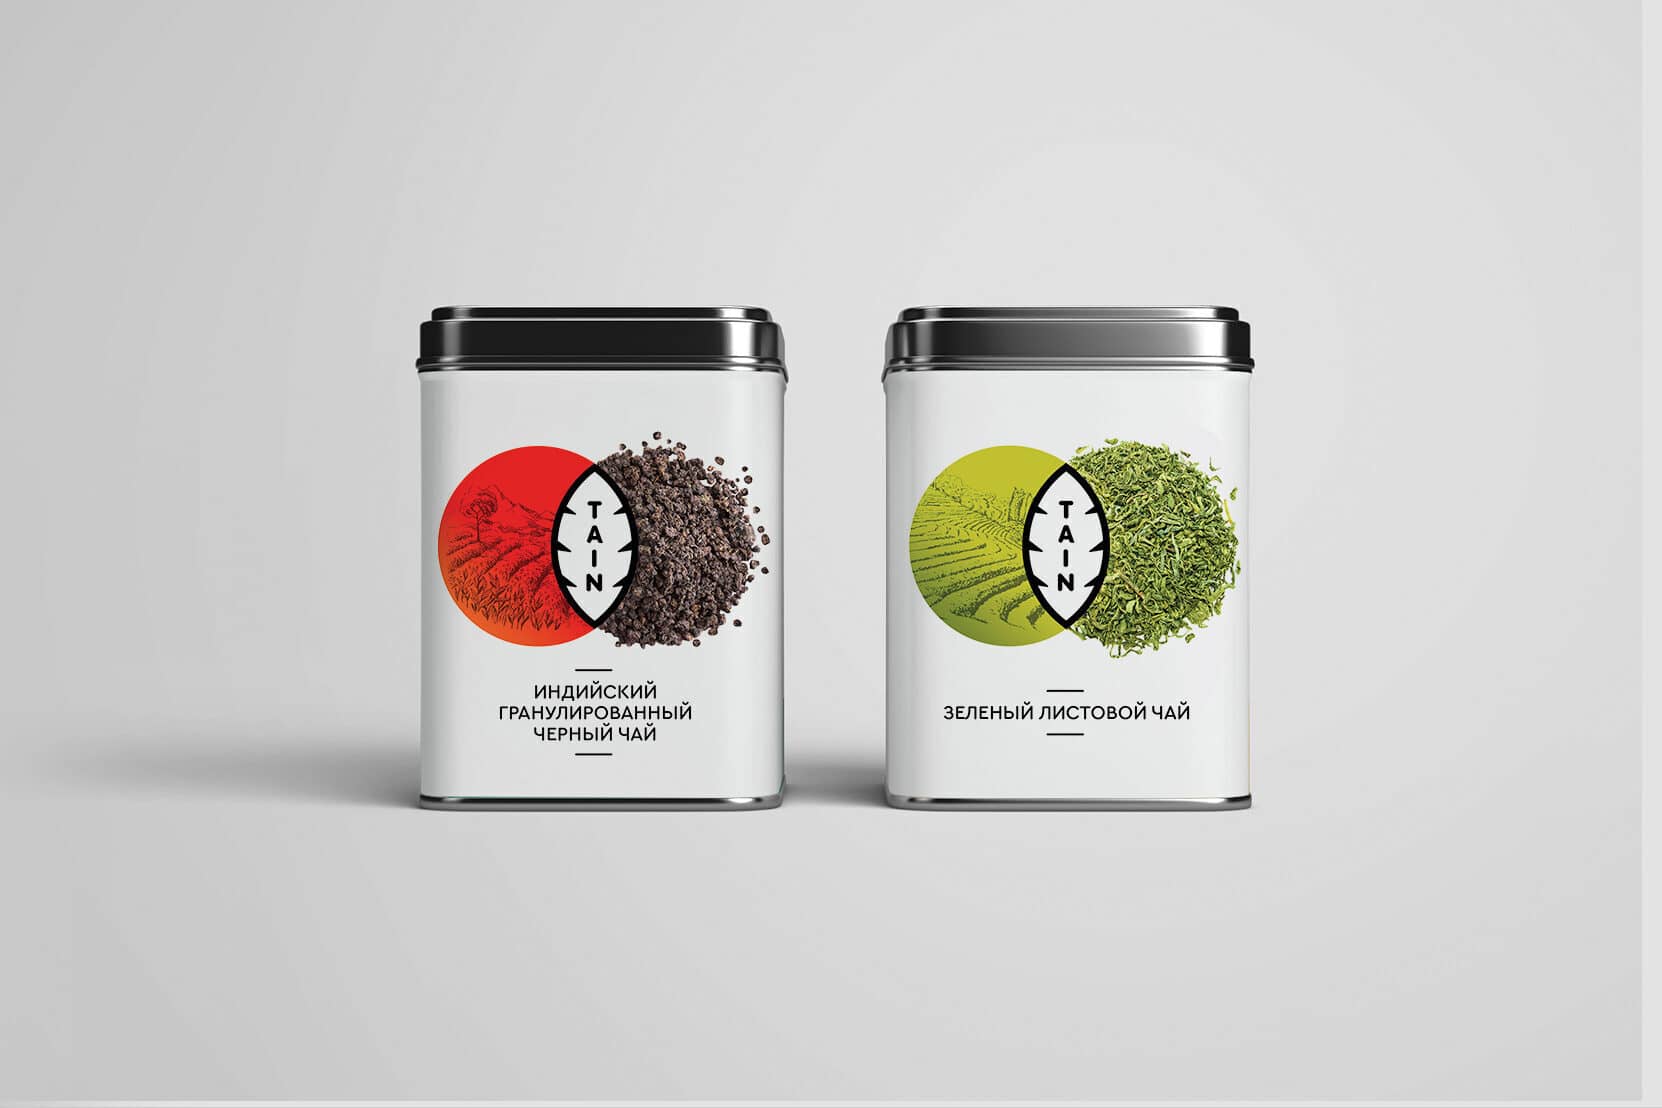 Дизайн упаковки для чая "Tain tea"